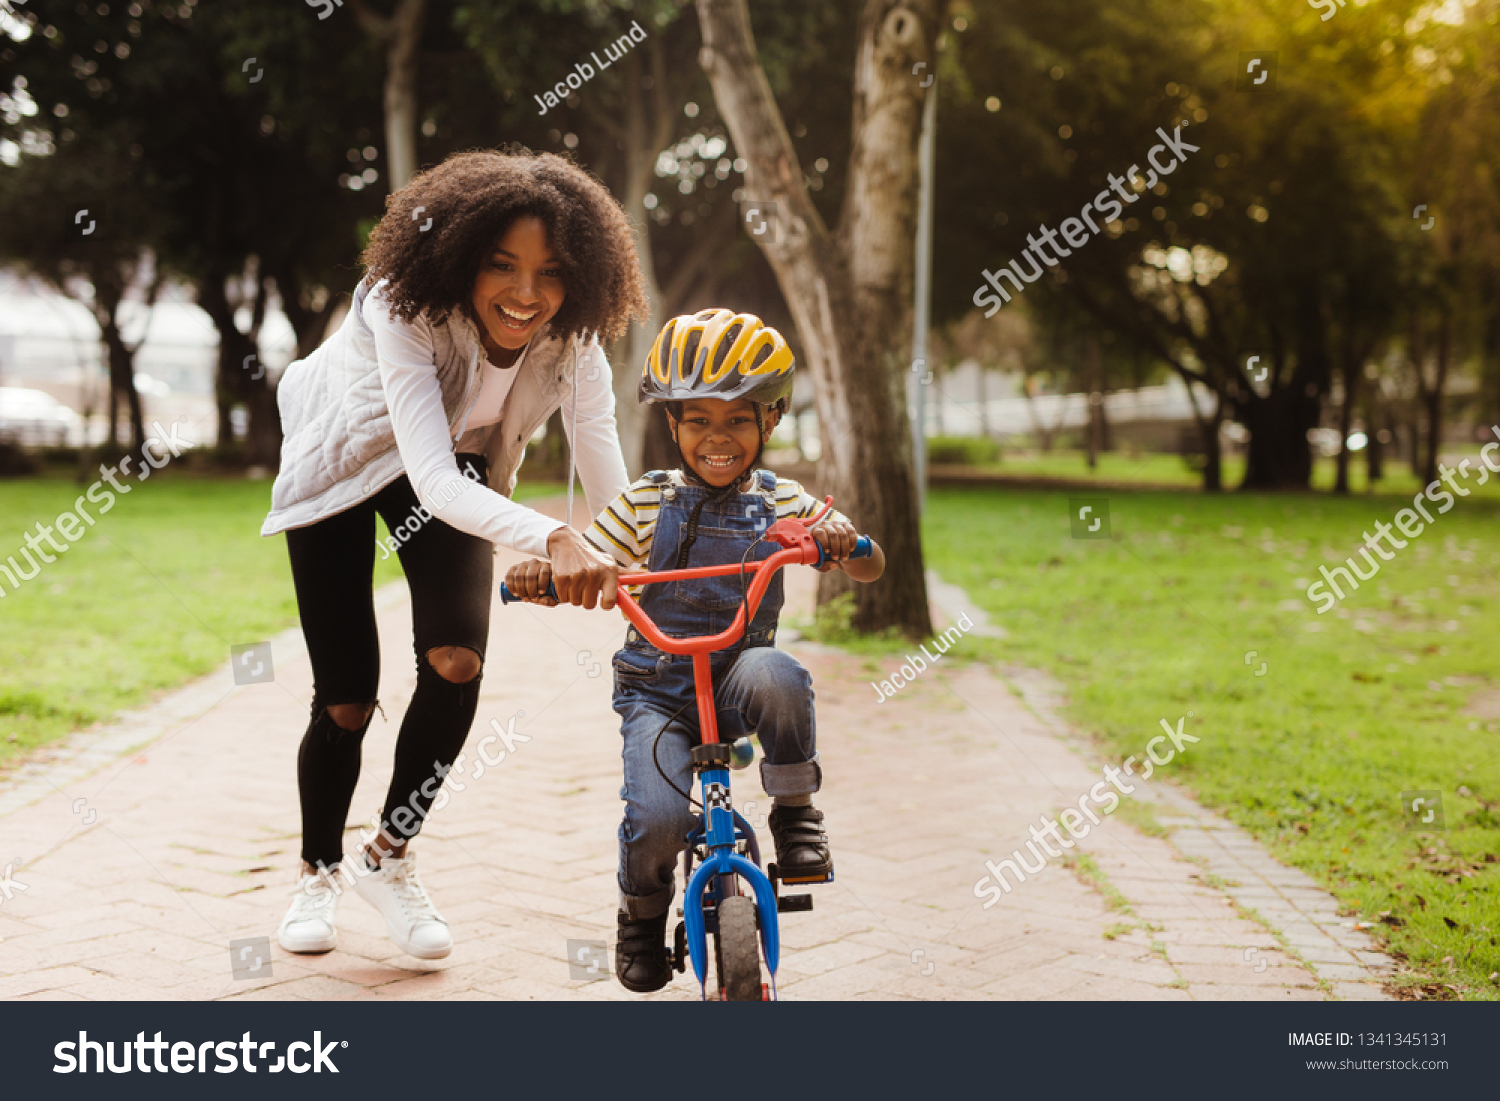 learn to bike